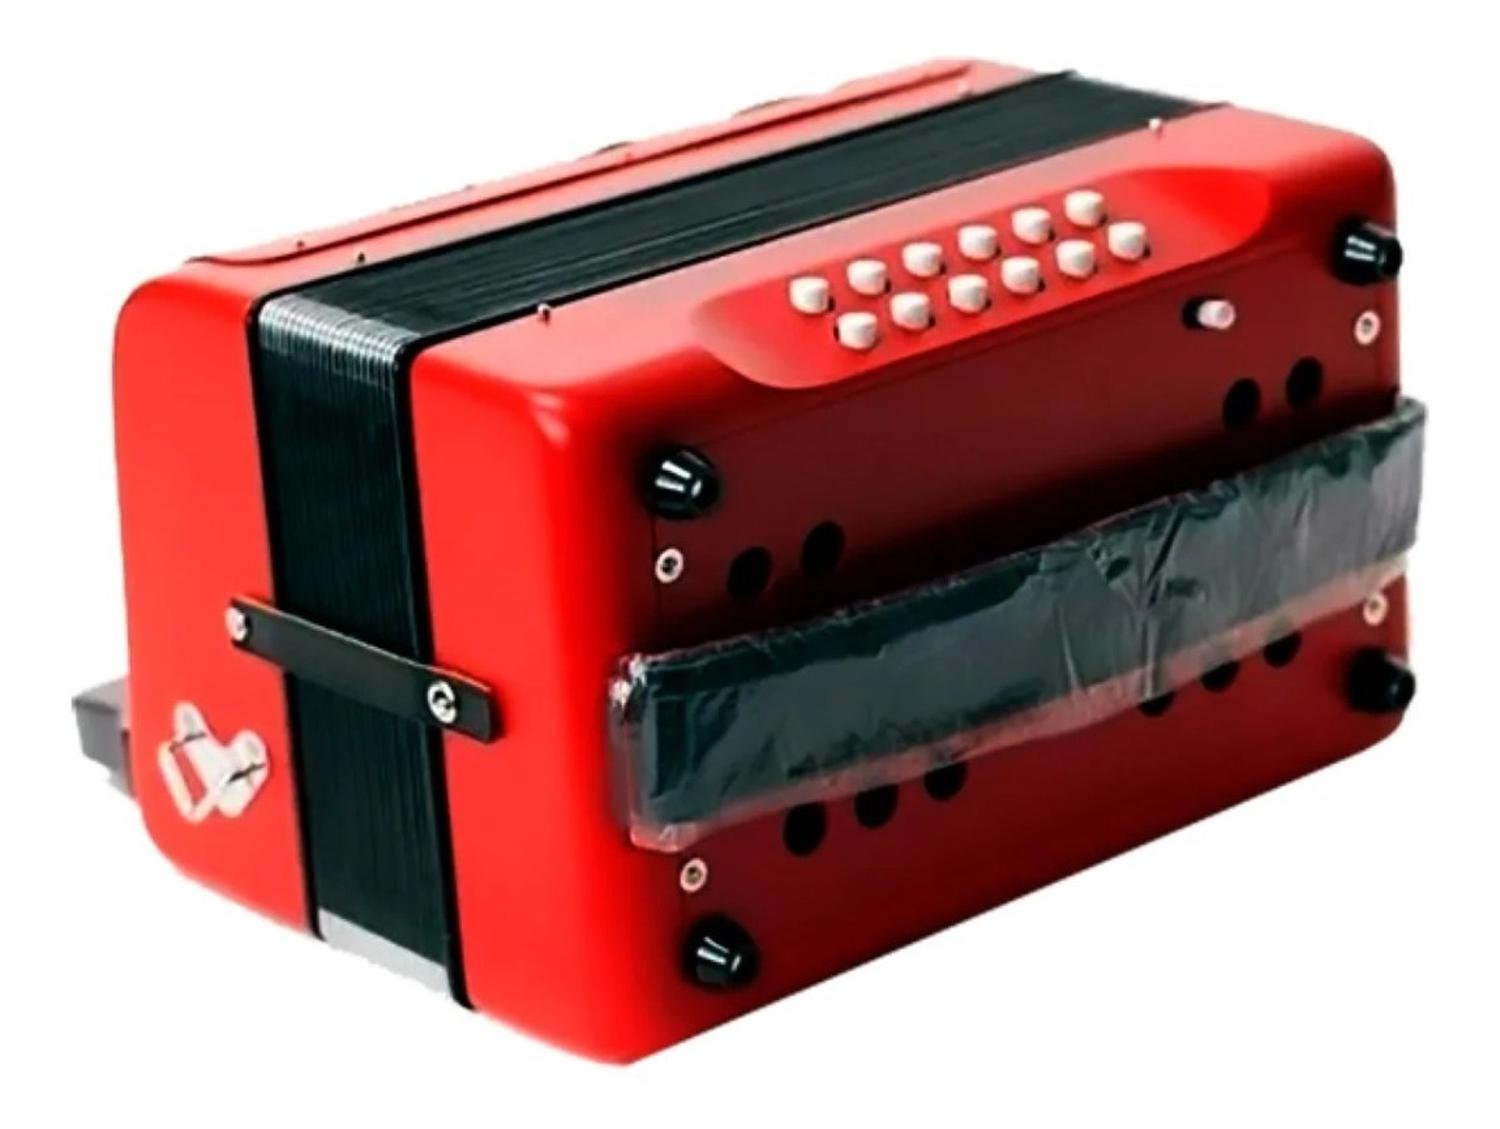 Hohner Acordeon Diatonico Sib-Mib-Lab Rojo con Funda A4864 Compadre